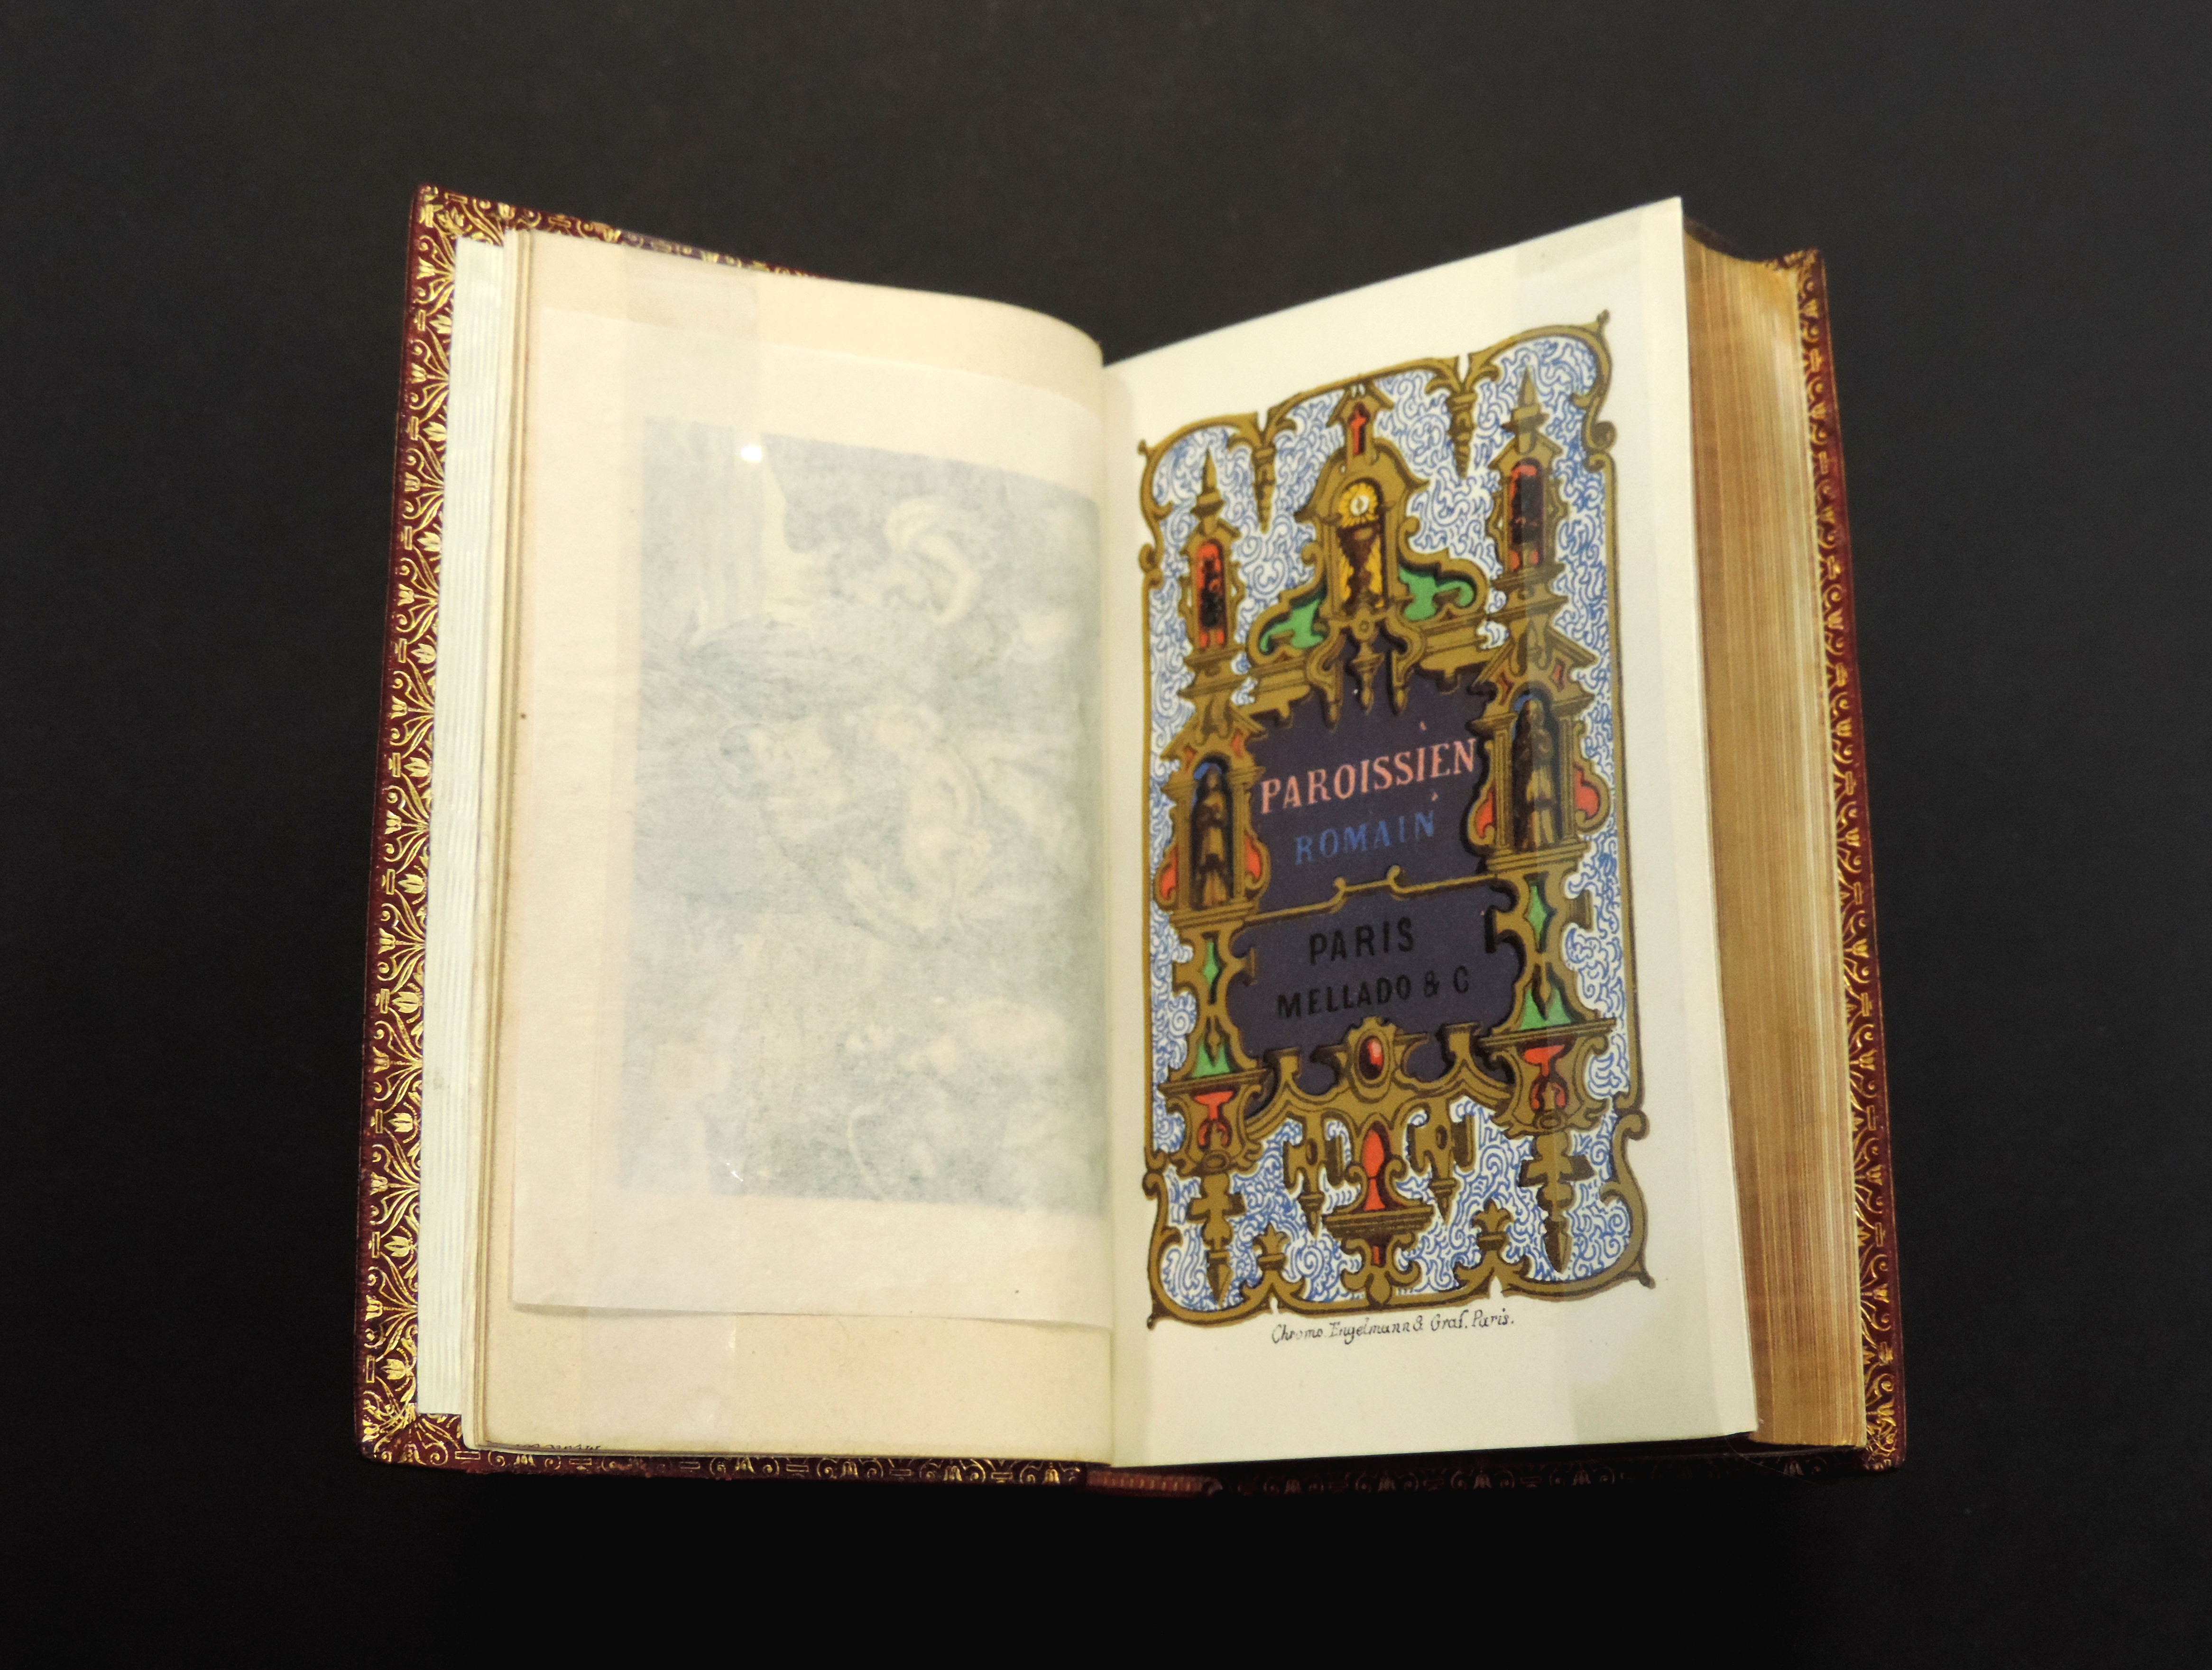 Editado en Paris por los Sucesores de Francisco de Paula Mellado y Cía., posterior a 1864. Cromolitografía de Engelmann.